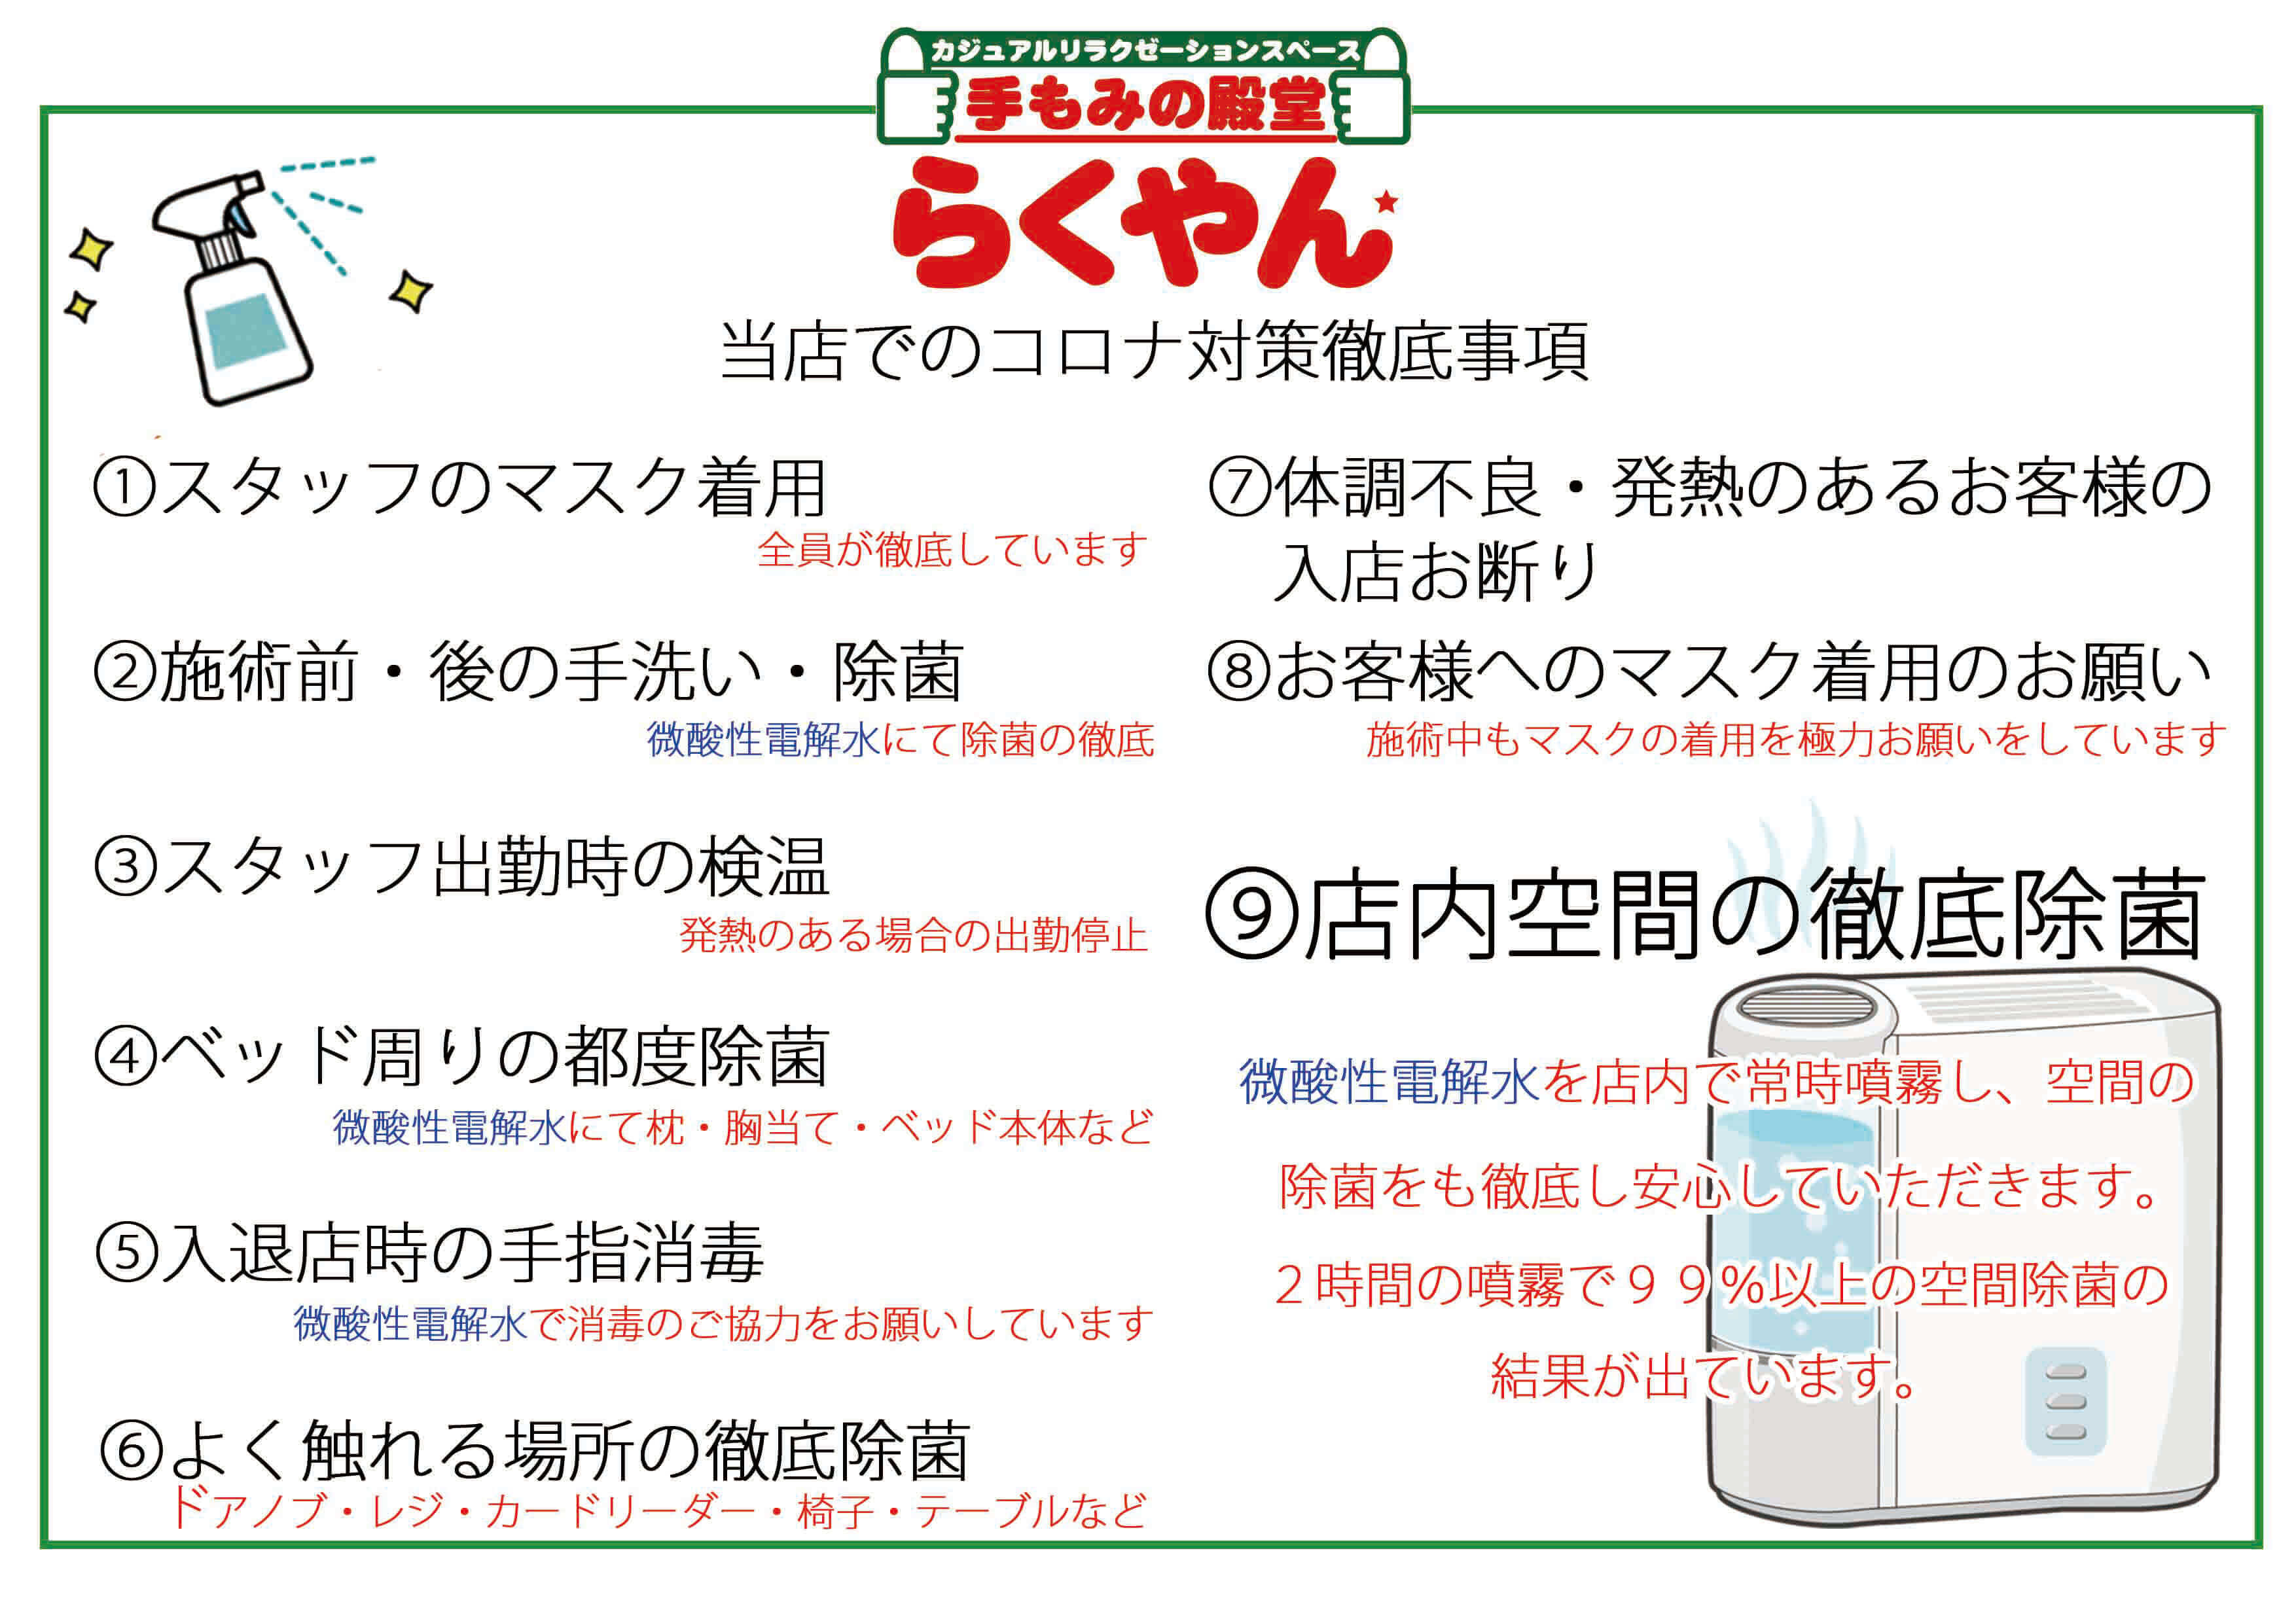 札幌エリア・長浜店でのコロナ対策徹底事項